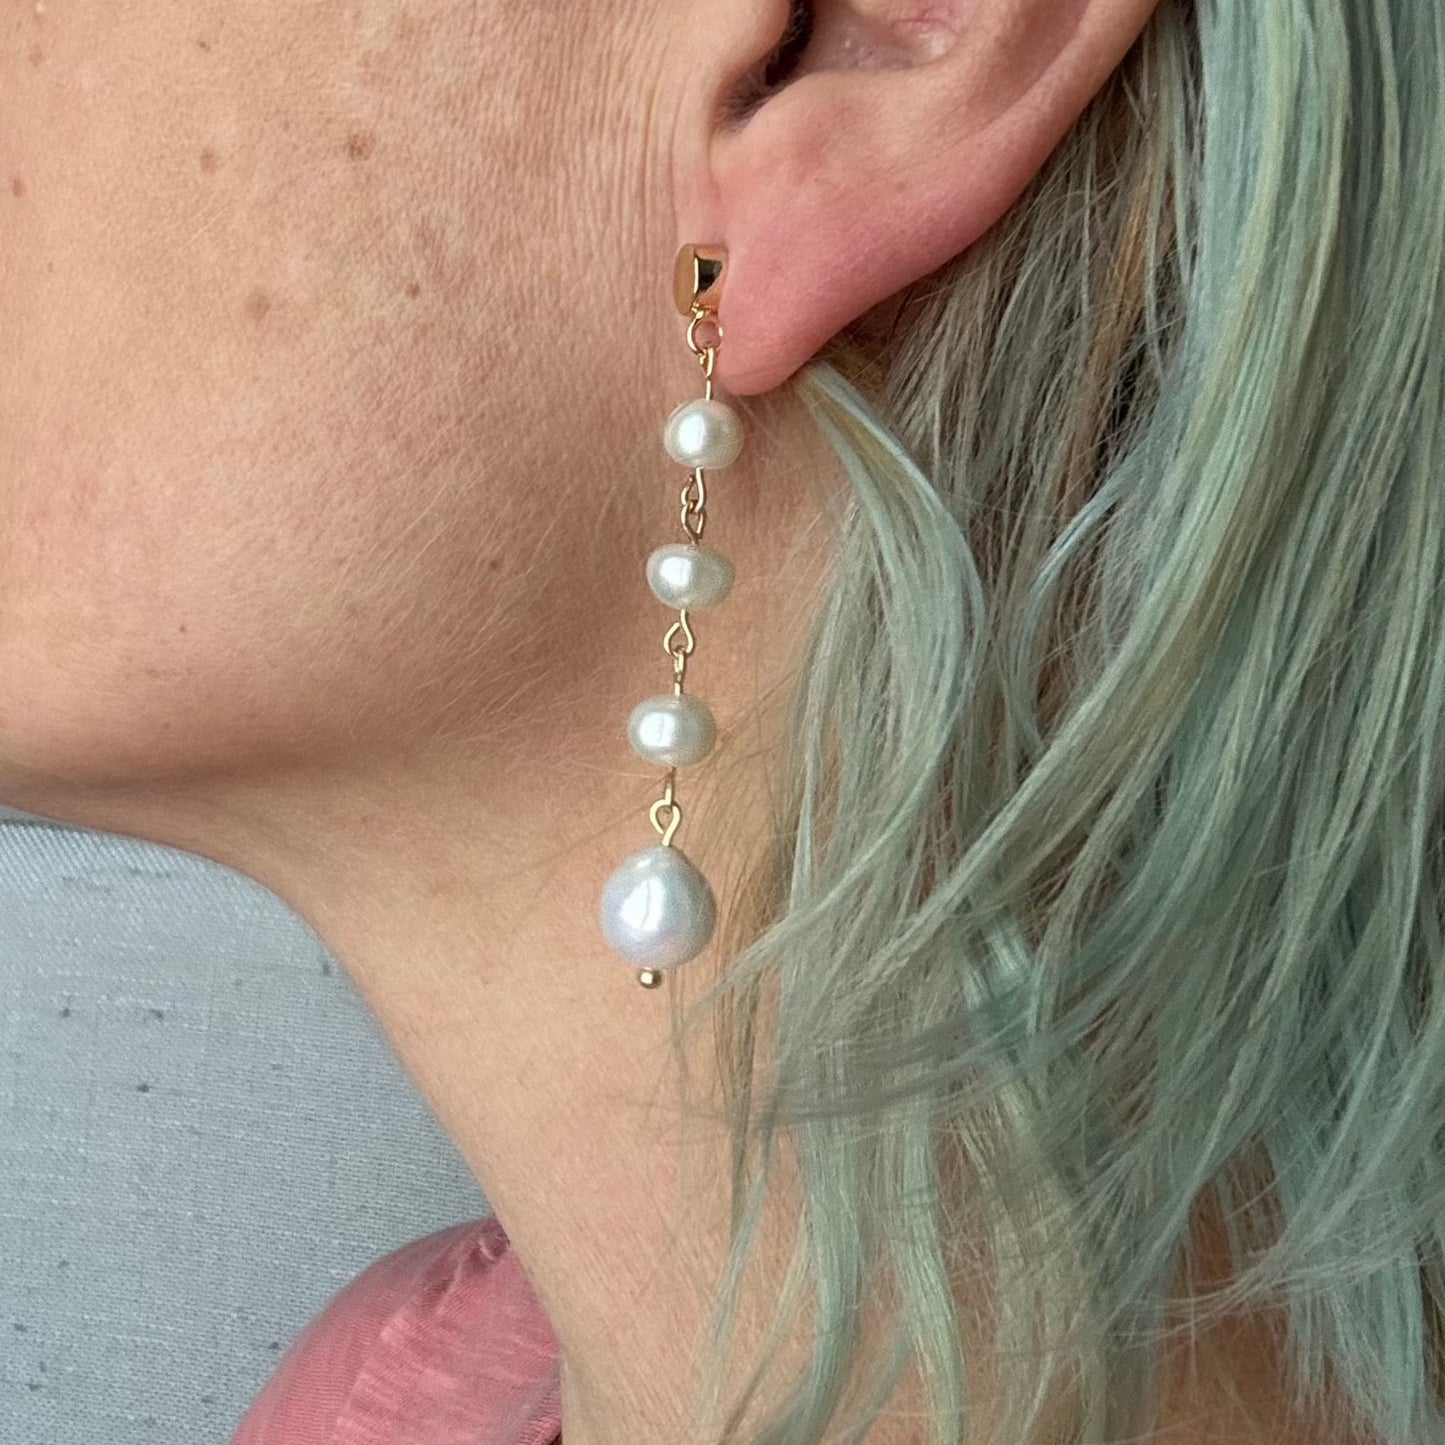 Long dangly pearl earrings